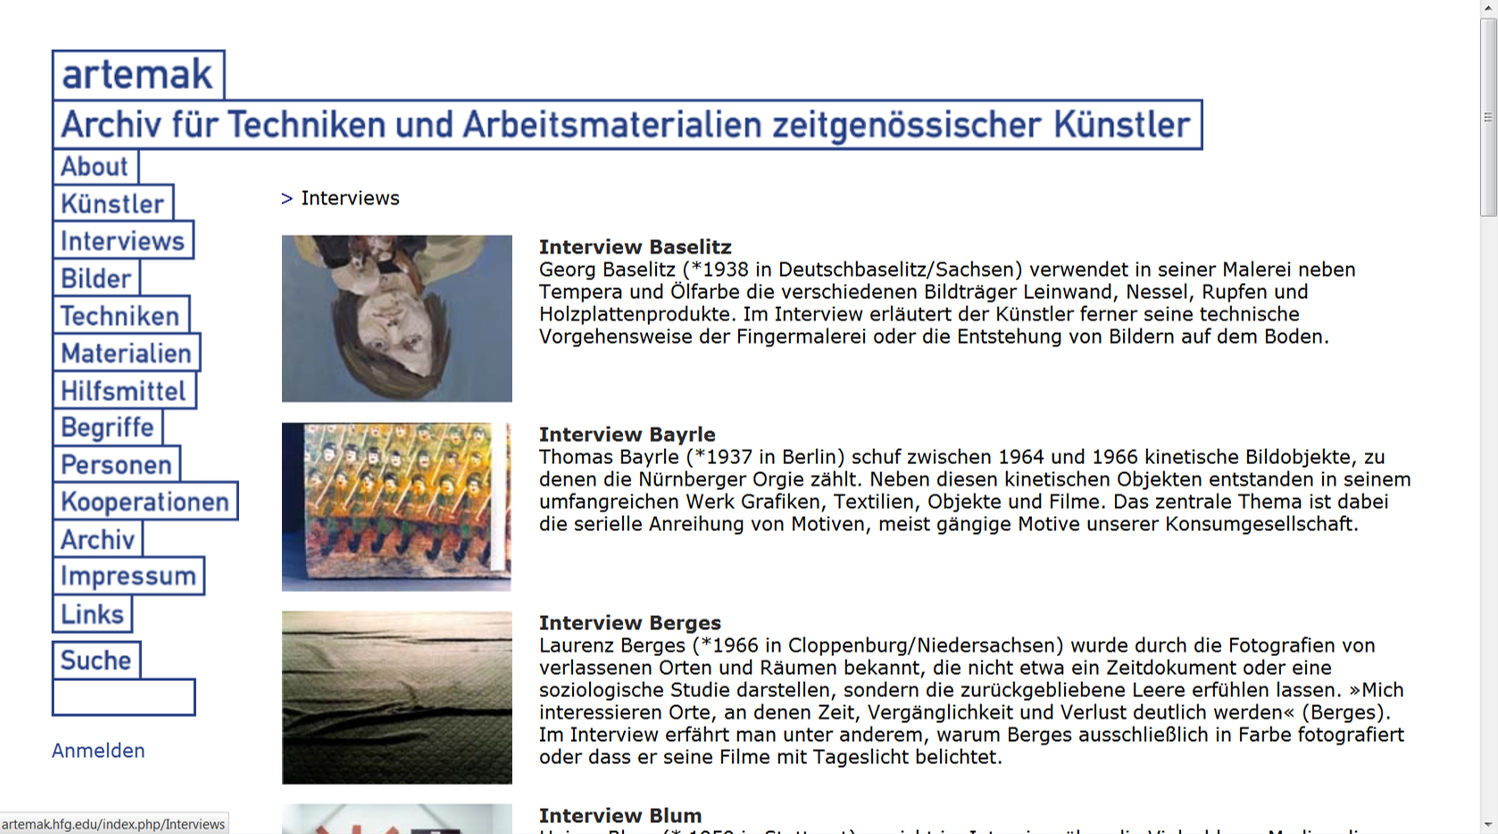 Screenshot der Webplattform artemak.de